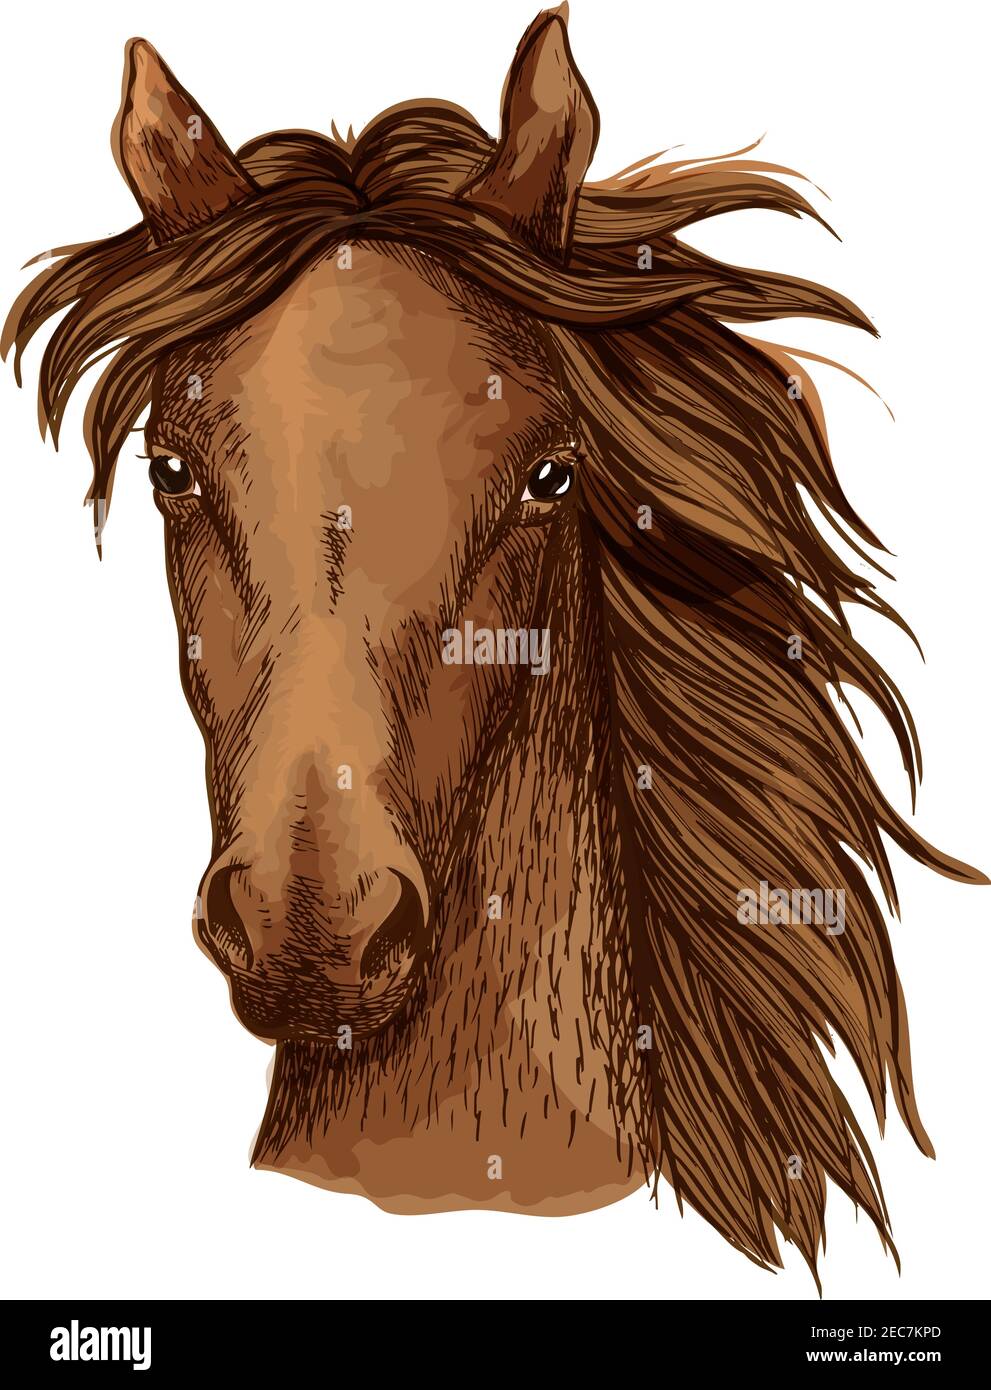 Schönes braunes Pferd künstlerisches Porträt. Bay Mustang Hengst mit langwelliger Mähne, die sich gerade nach vorne schauen. Pferdesport Stock Vektor